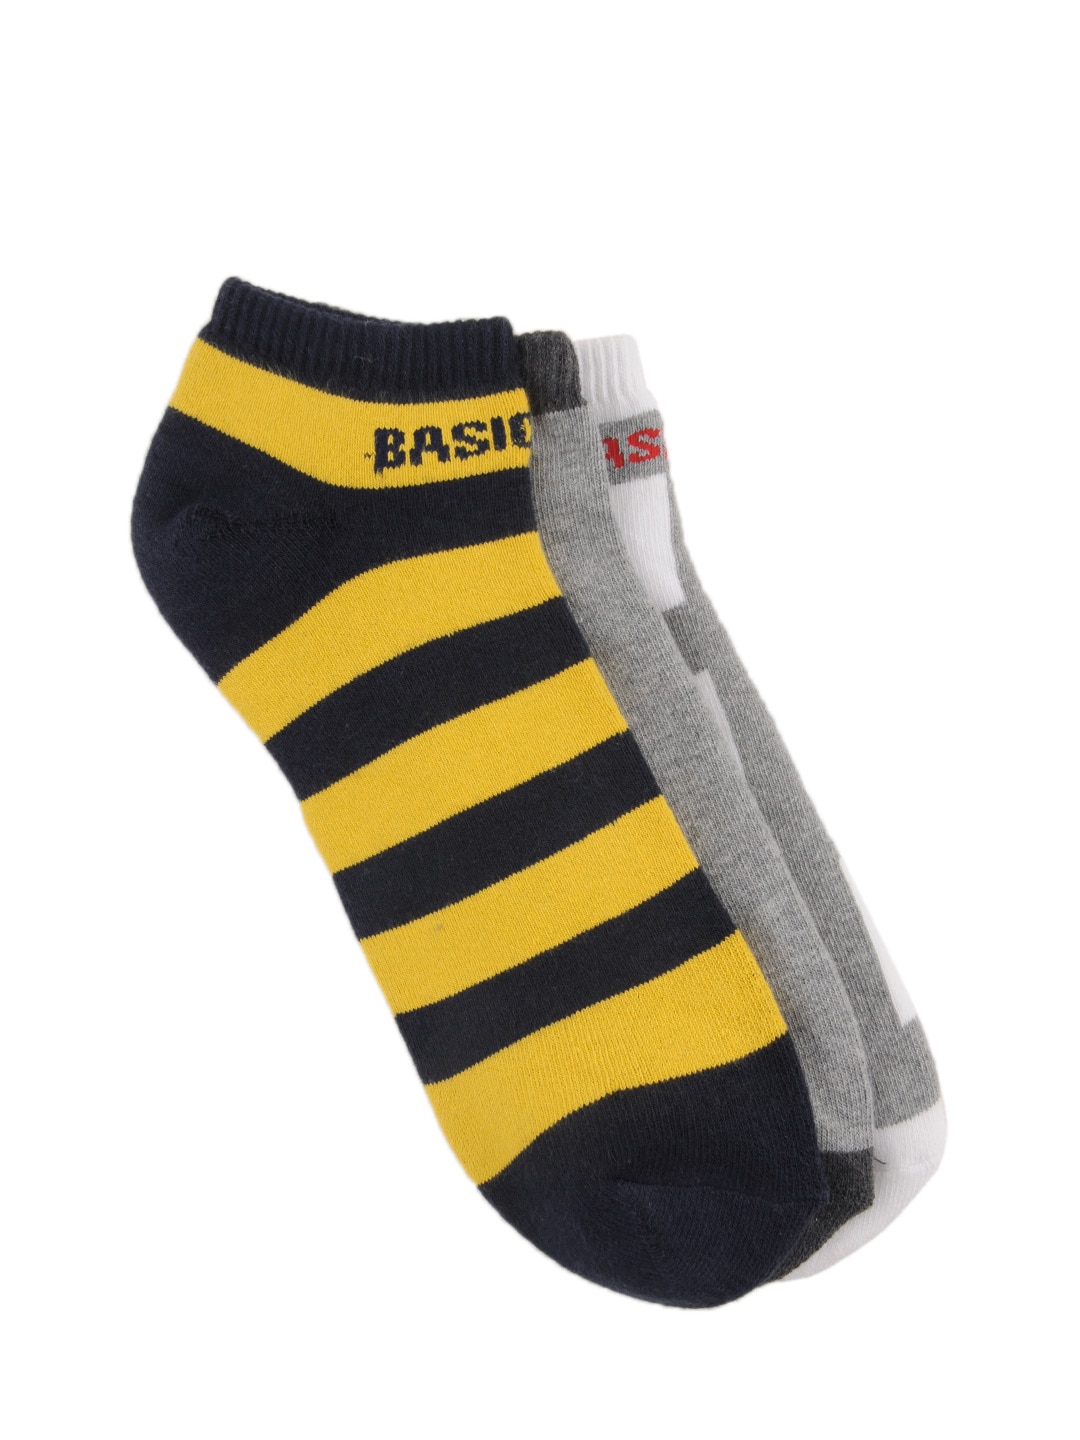 Basics Men Set of 3 Socks